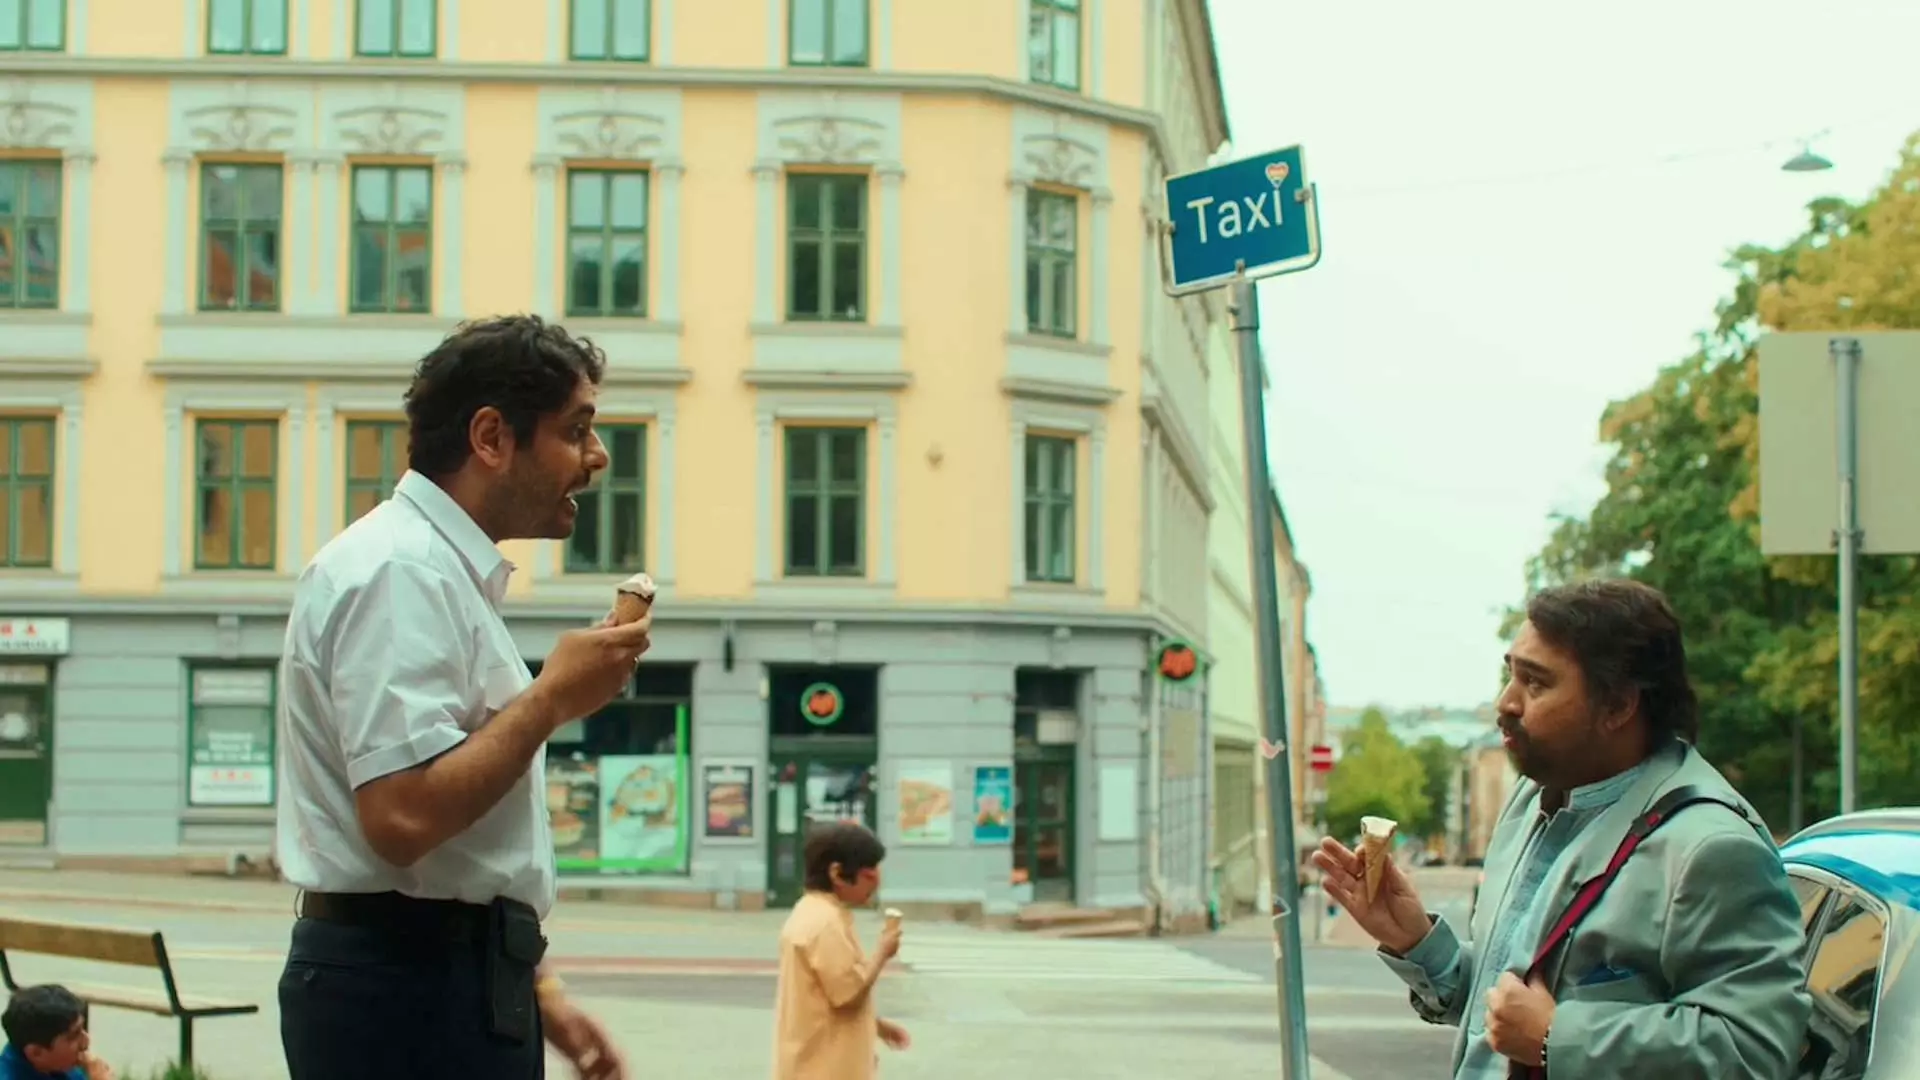 To menn står ved en taxiholdeplass i en bygate. De spiser iskrem om ser på hverandre. I bakgrunnen kan man se en gul bygning og en person som går forbi. Det er dagslys og gaten virker rolig med få mennesker og biler.